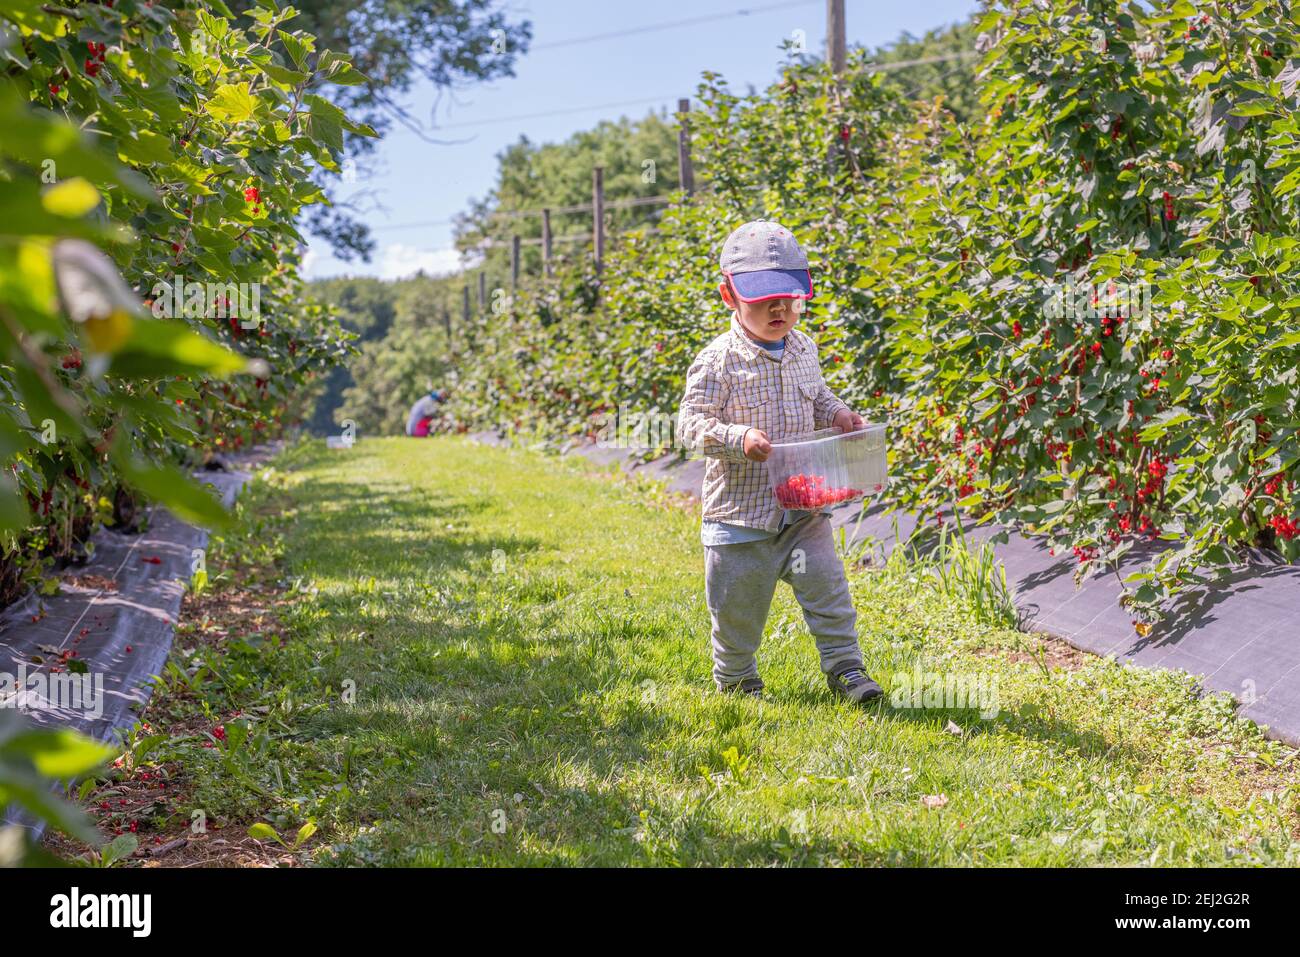 Bambini in giardino. Un ragazzo asiatico che cammina con un cestino di frutta. Self picking in una fattoria in una giornata di sole. Vevey, Svizzera. Bacche di ribes rosso. Nervatura Foto Stock